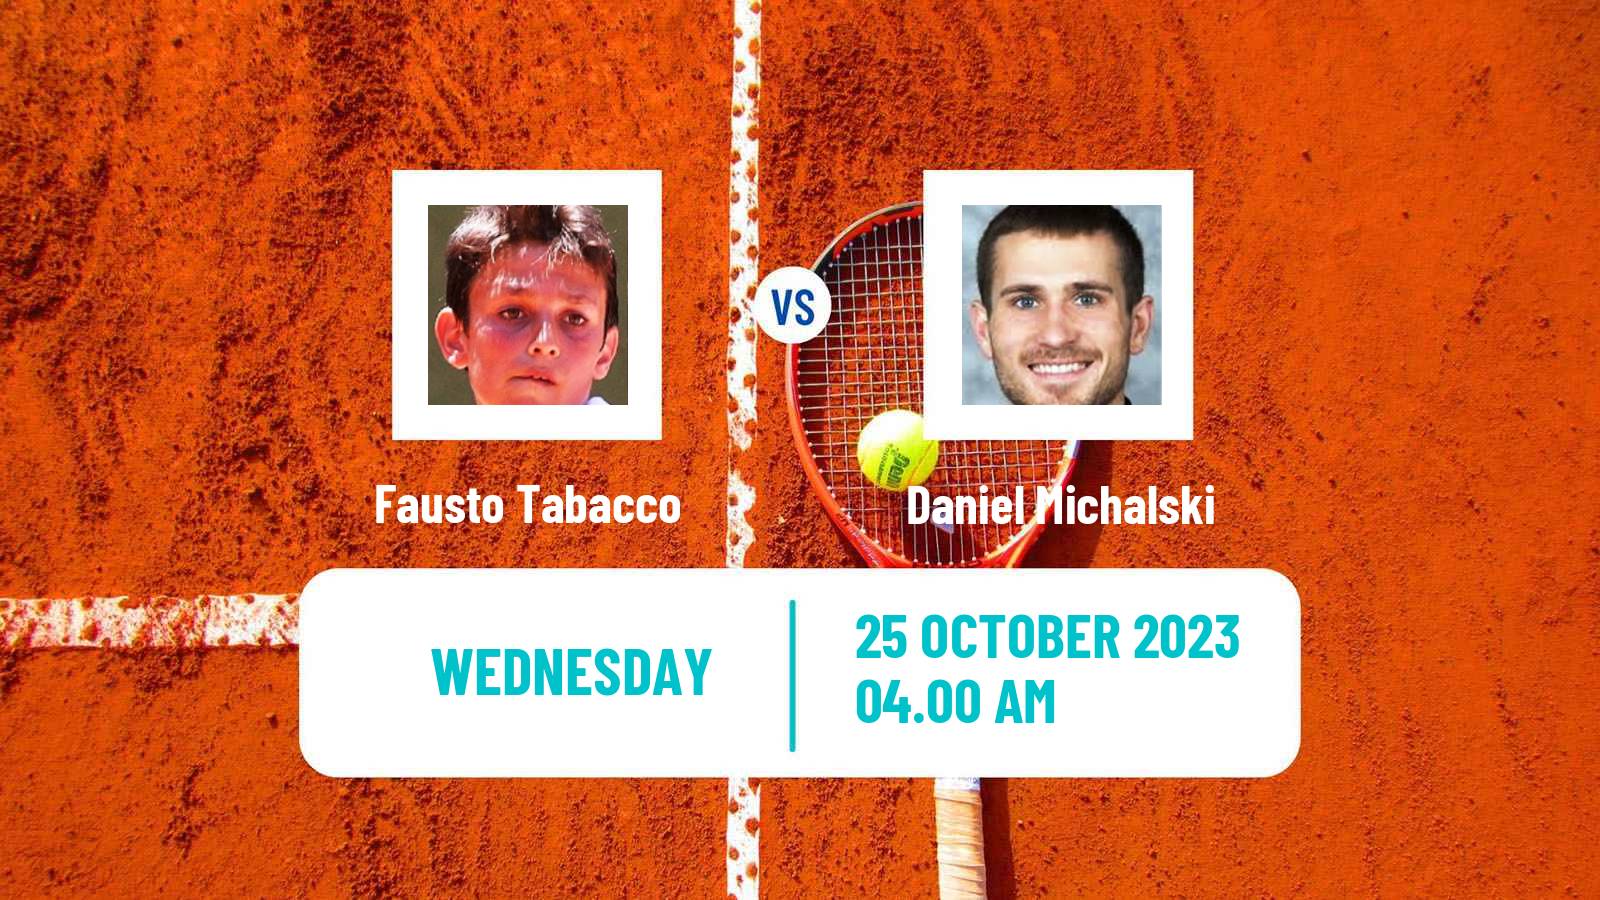 Tennis ITF M25 Santa Margherita Di Pula 11 Men Fausto Tabacco - Daniel Michalski